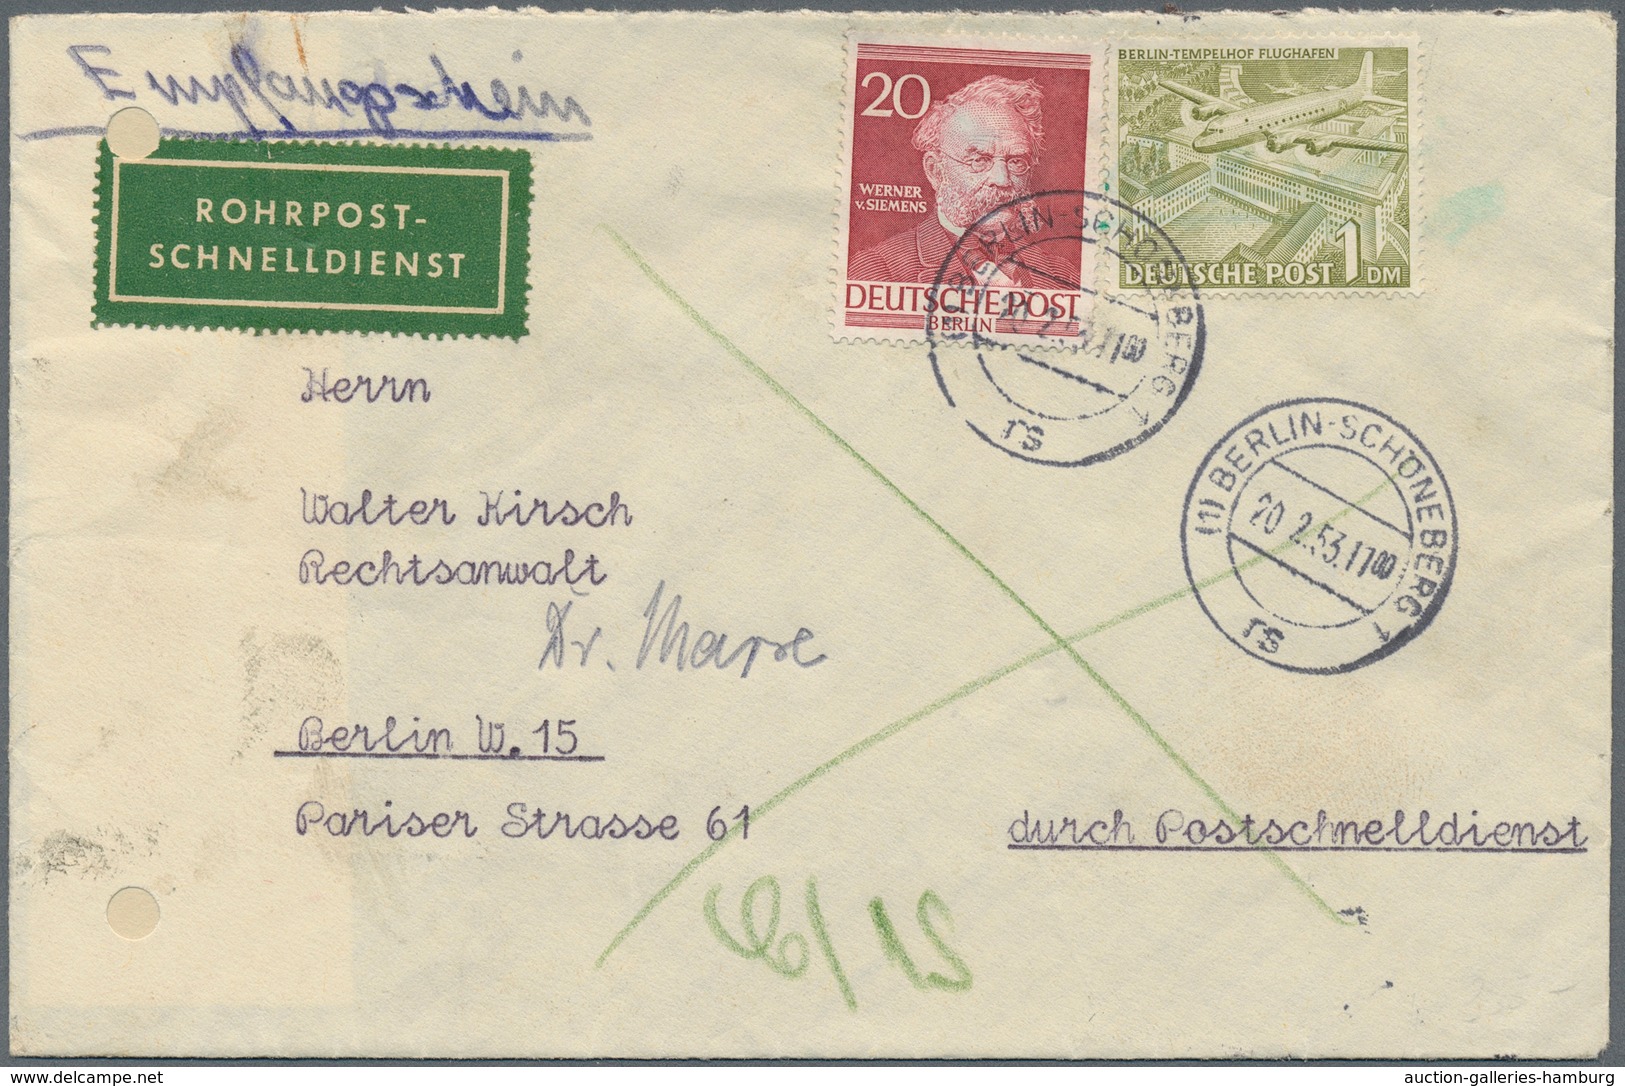 Berlin - Postschnelldienst: 1 DM. Bauten Mit 20 Pf. Männer I Zusammen Auf Postschnelldienstbf. Mit E - Covers & Documents